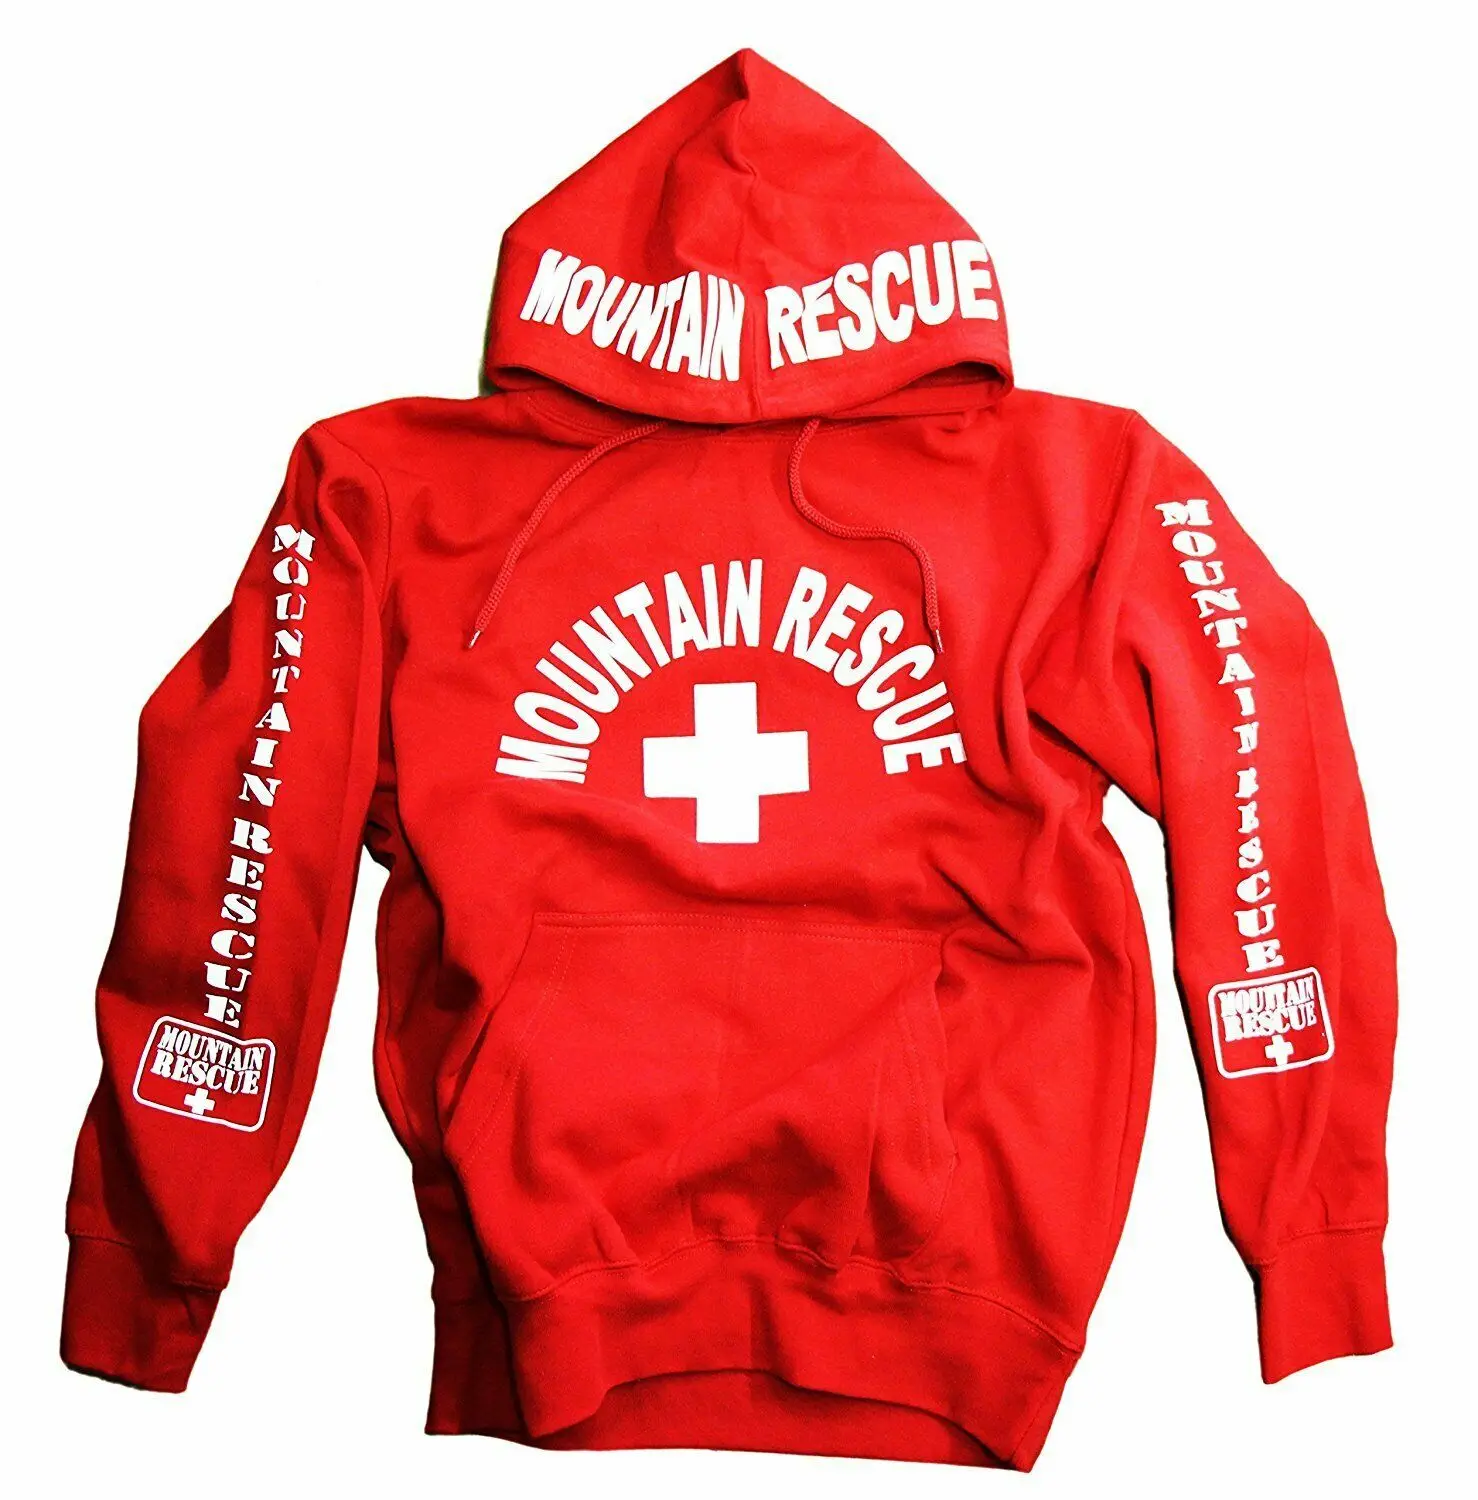 Новинка, зимняя толстовка с капюшоном для горного спасателя, красная Мужская спасательная рубашка для катания на лыжах, хлопковая флисовая толстовка, Sudadera hombre - Цвет: Красный